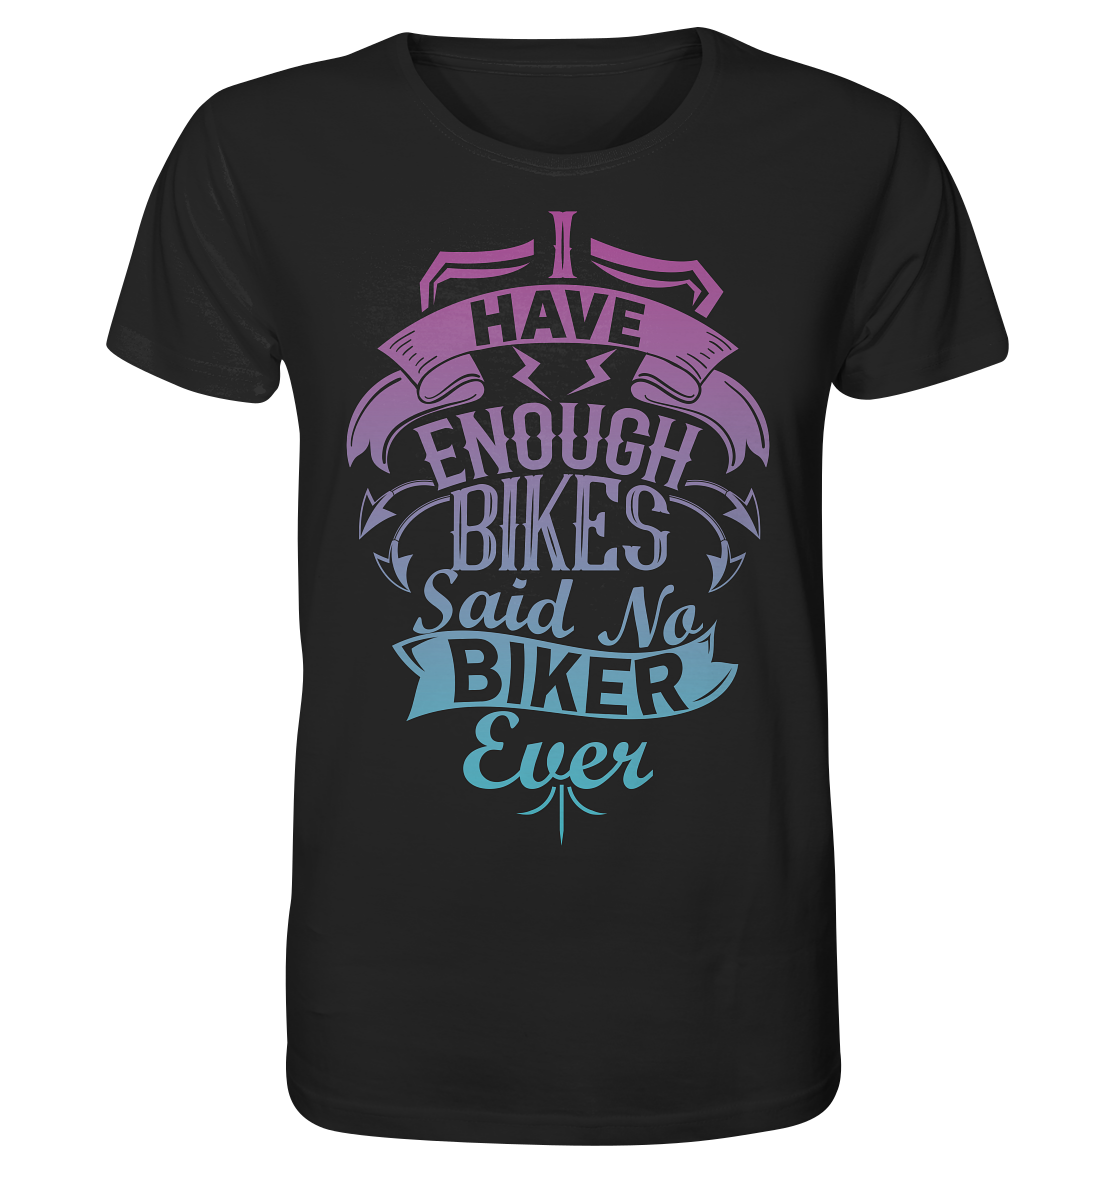 Enough Bikes - Organic Shirt